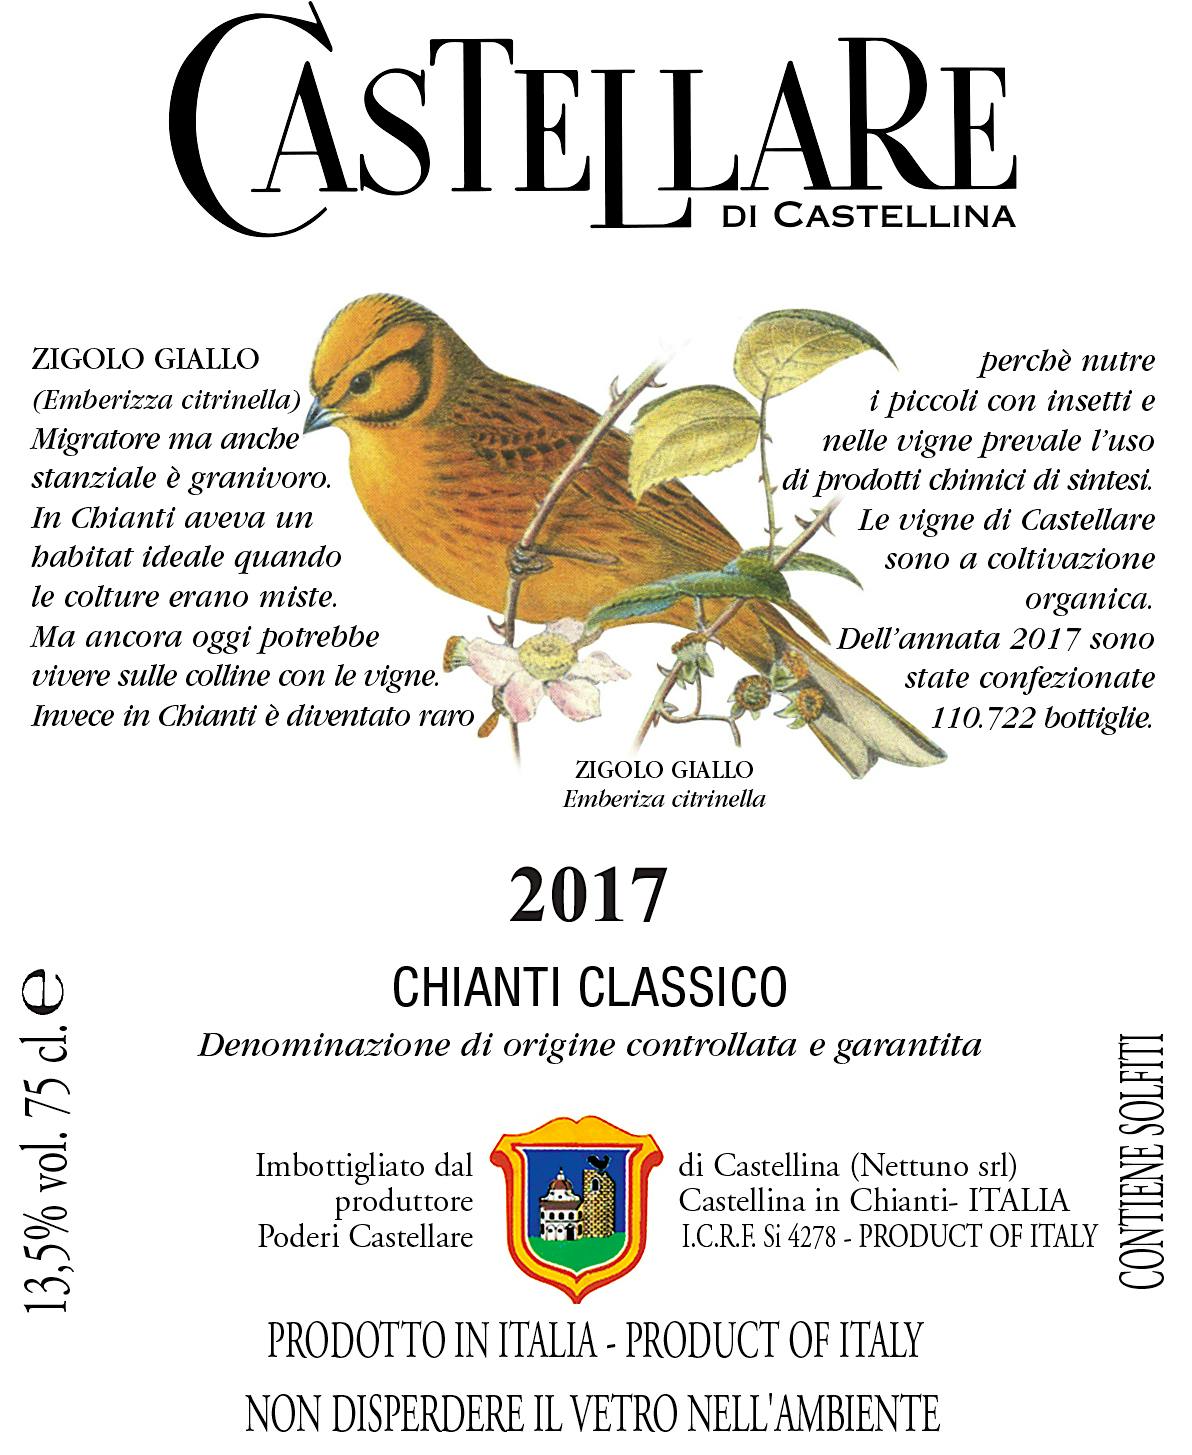 Label for Castellare di Castellina